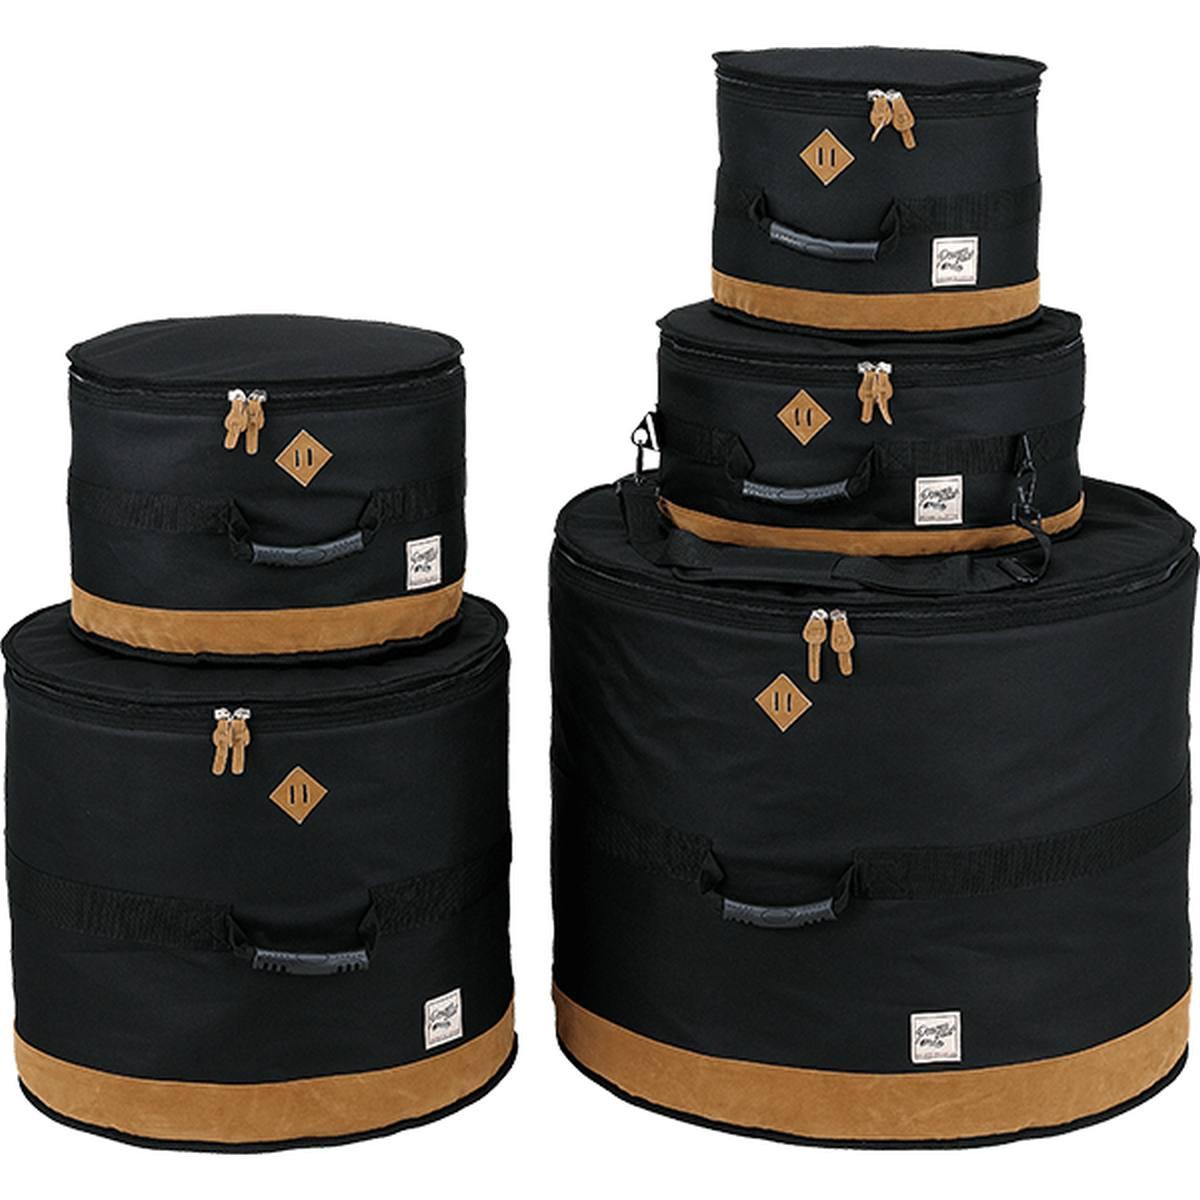 TAMA TDSS52KBK Power Pad Designer Collection Drum Bag Set for 5pc Drum Kit with 22"BD, Black